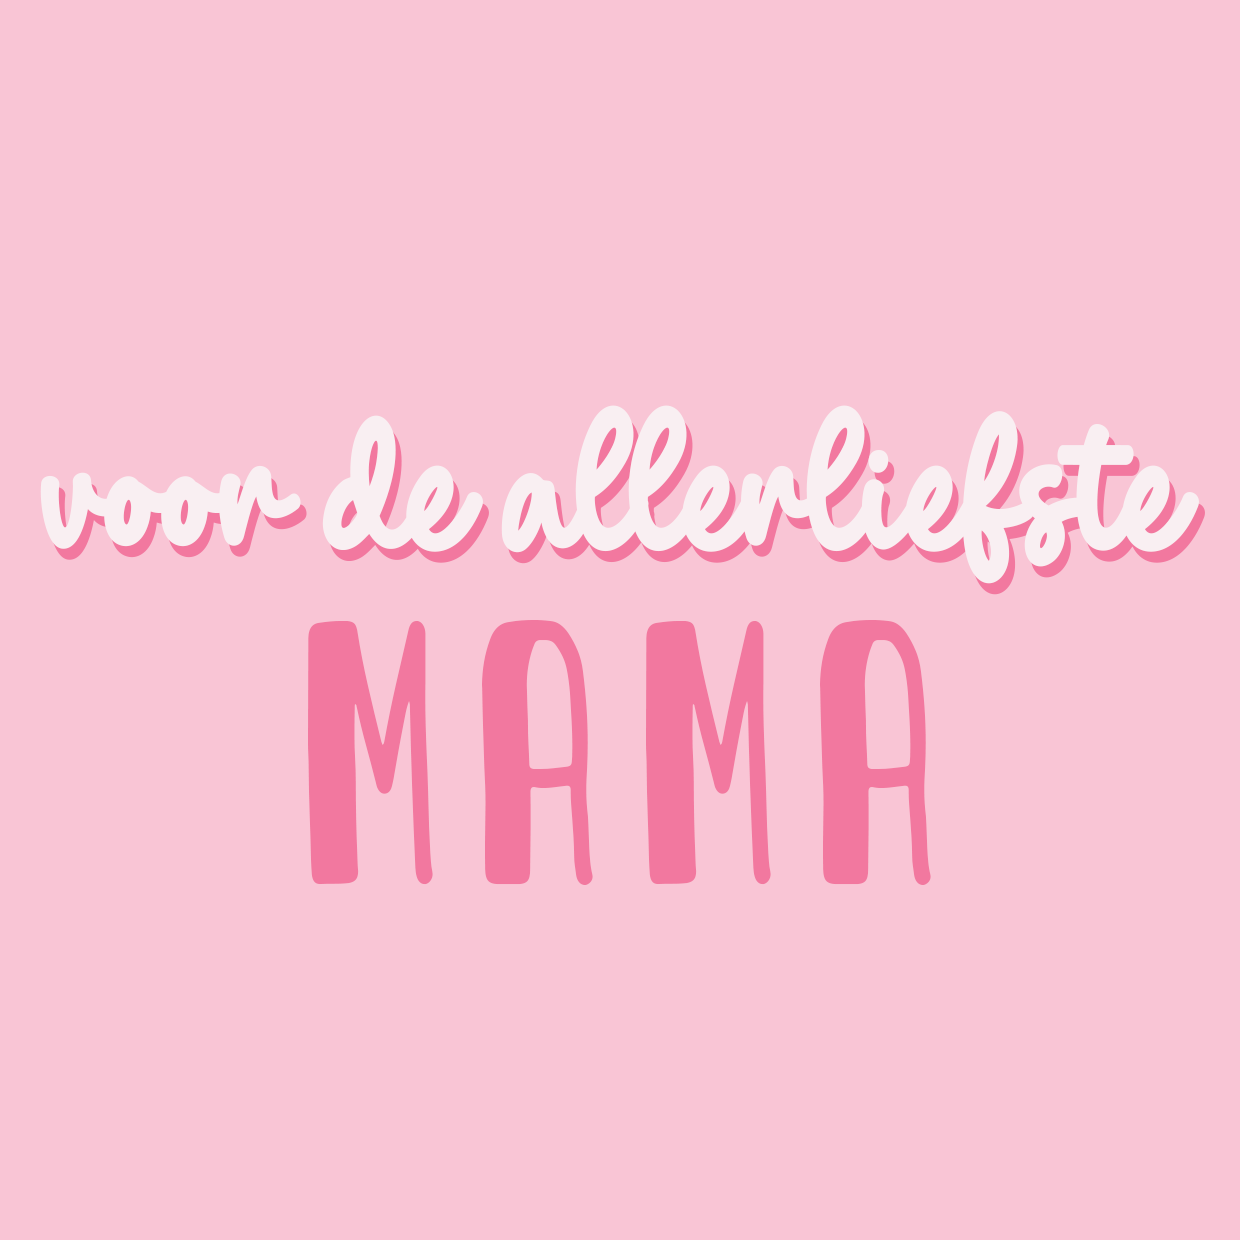 Wenskaart 'Liefste Mama'